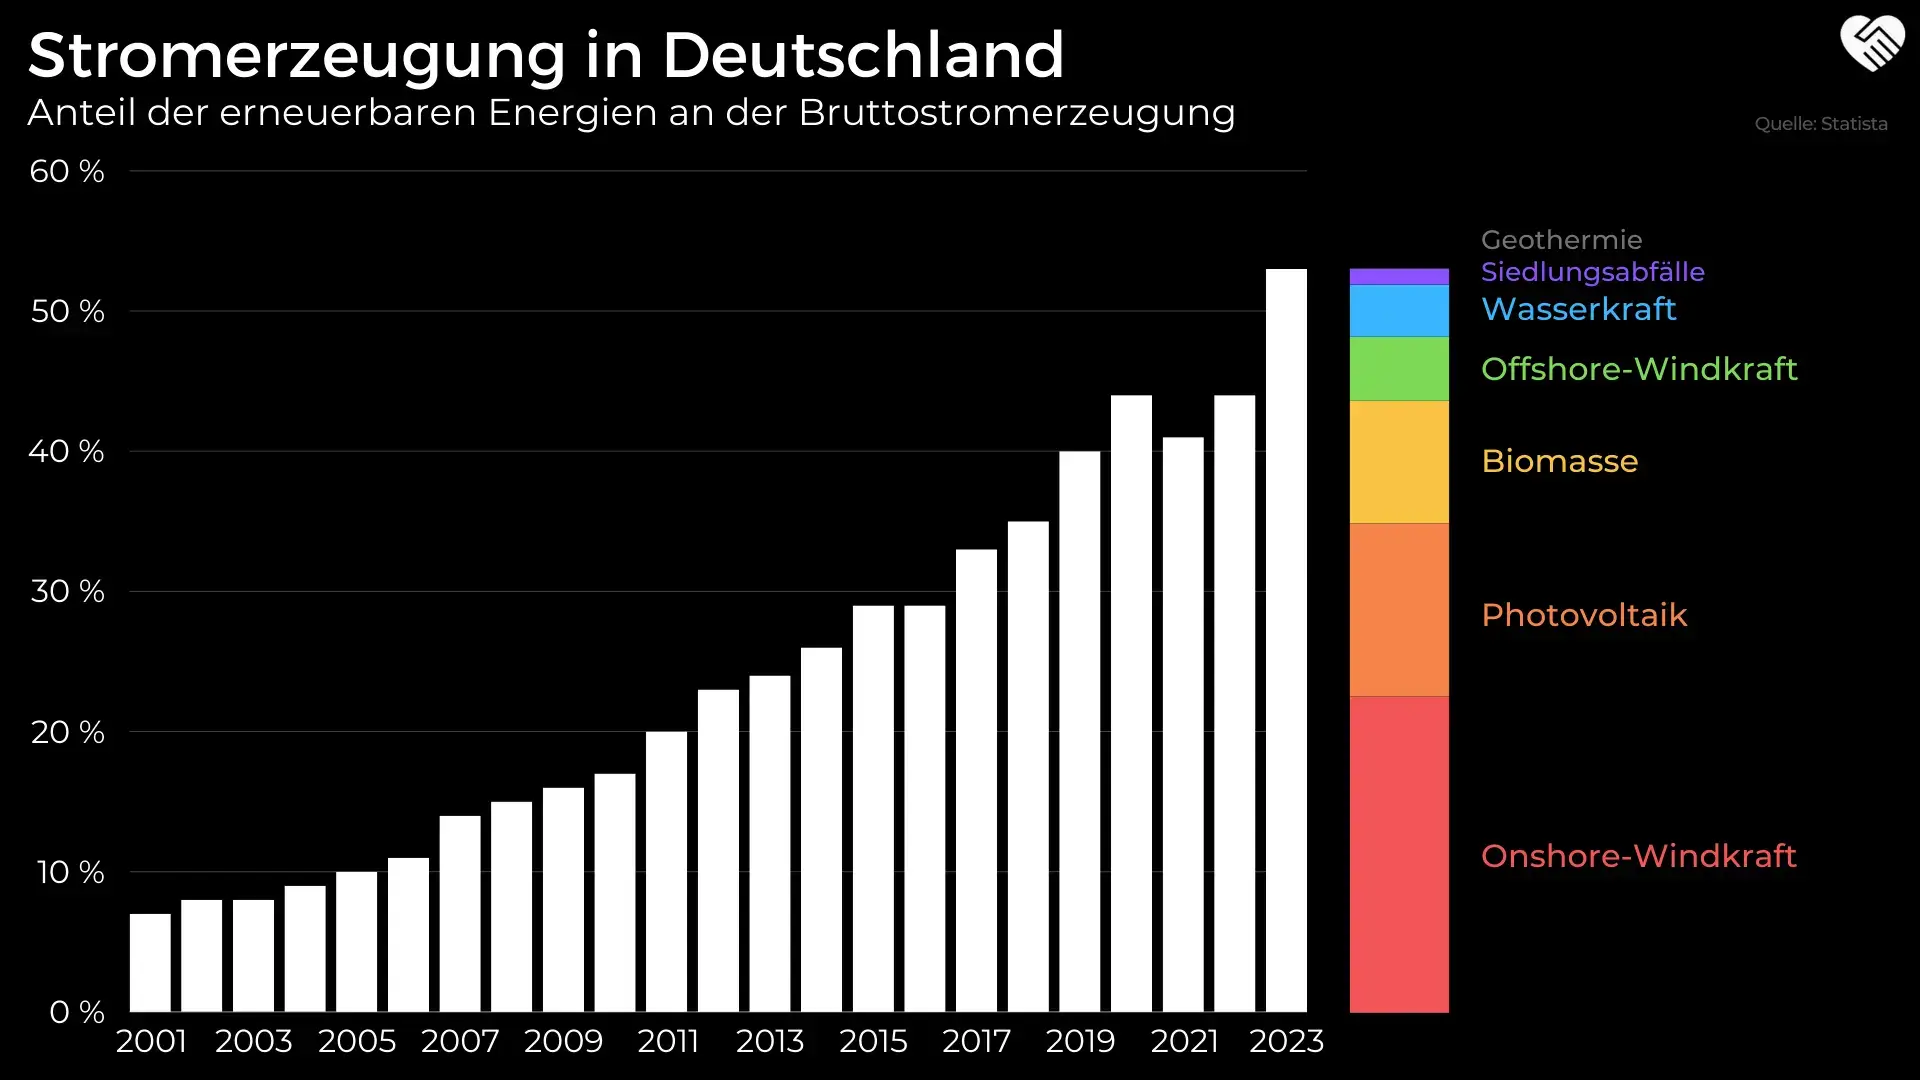 Anteil der erneuerbaren Energien an der Stromerzeugung in Deutschland